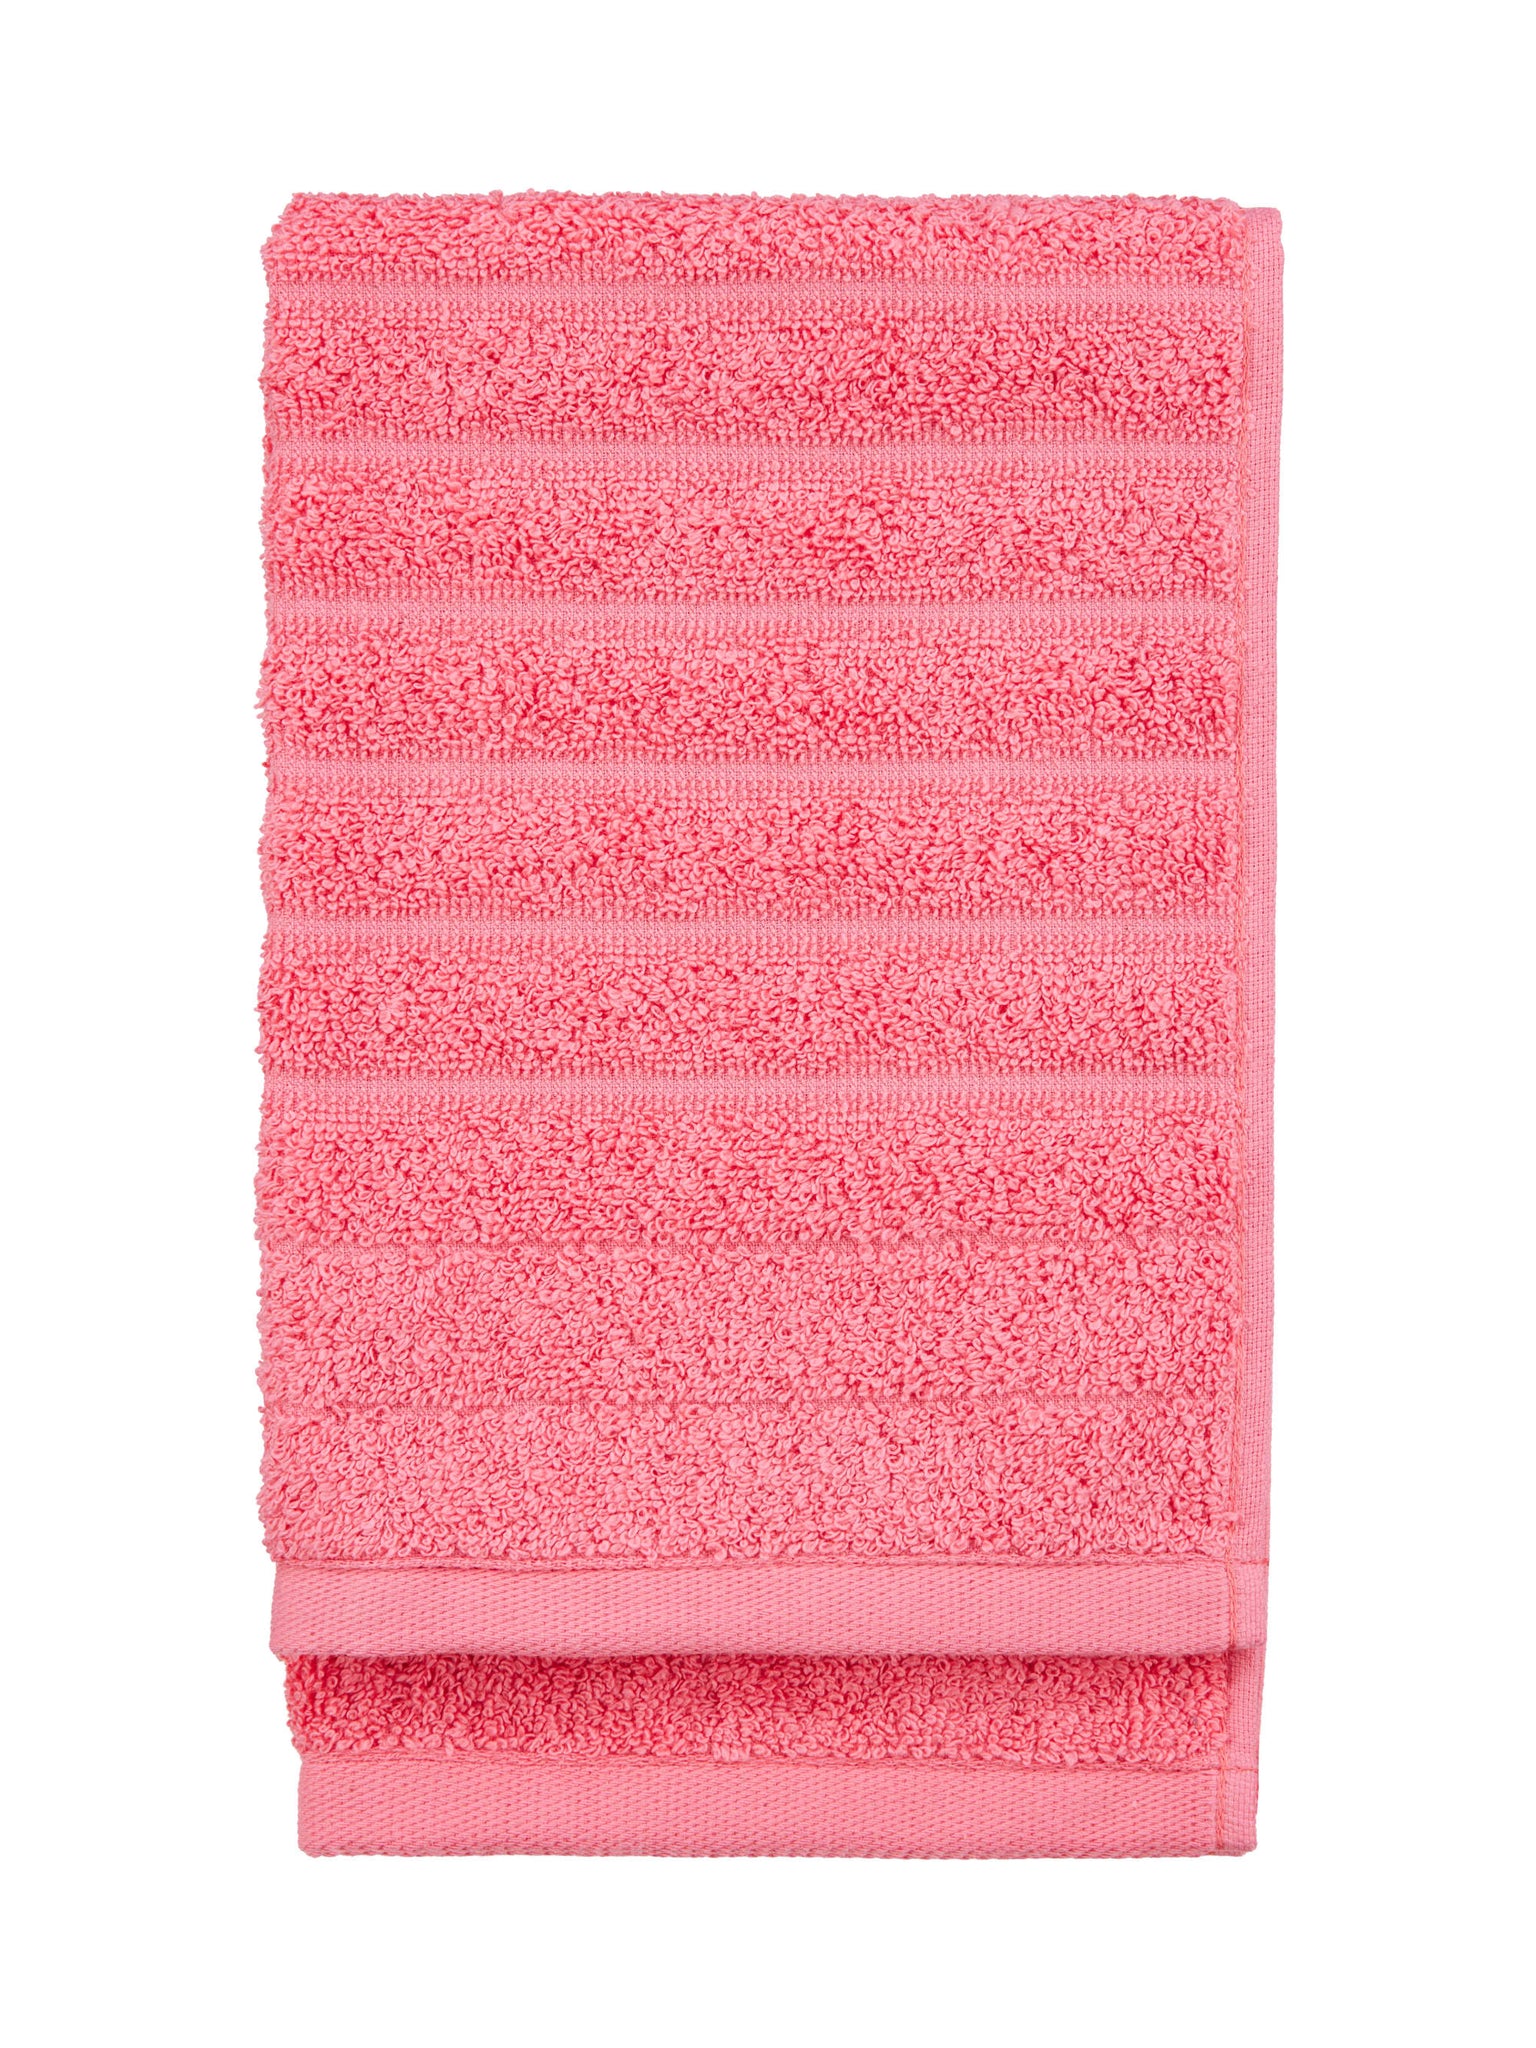 Reilu Towel